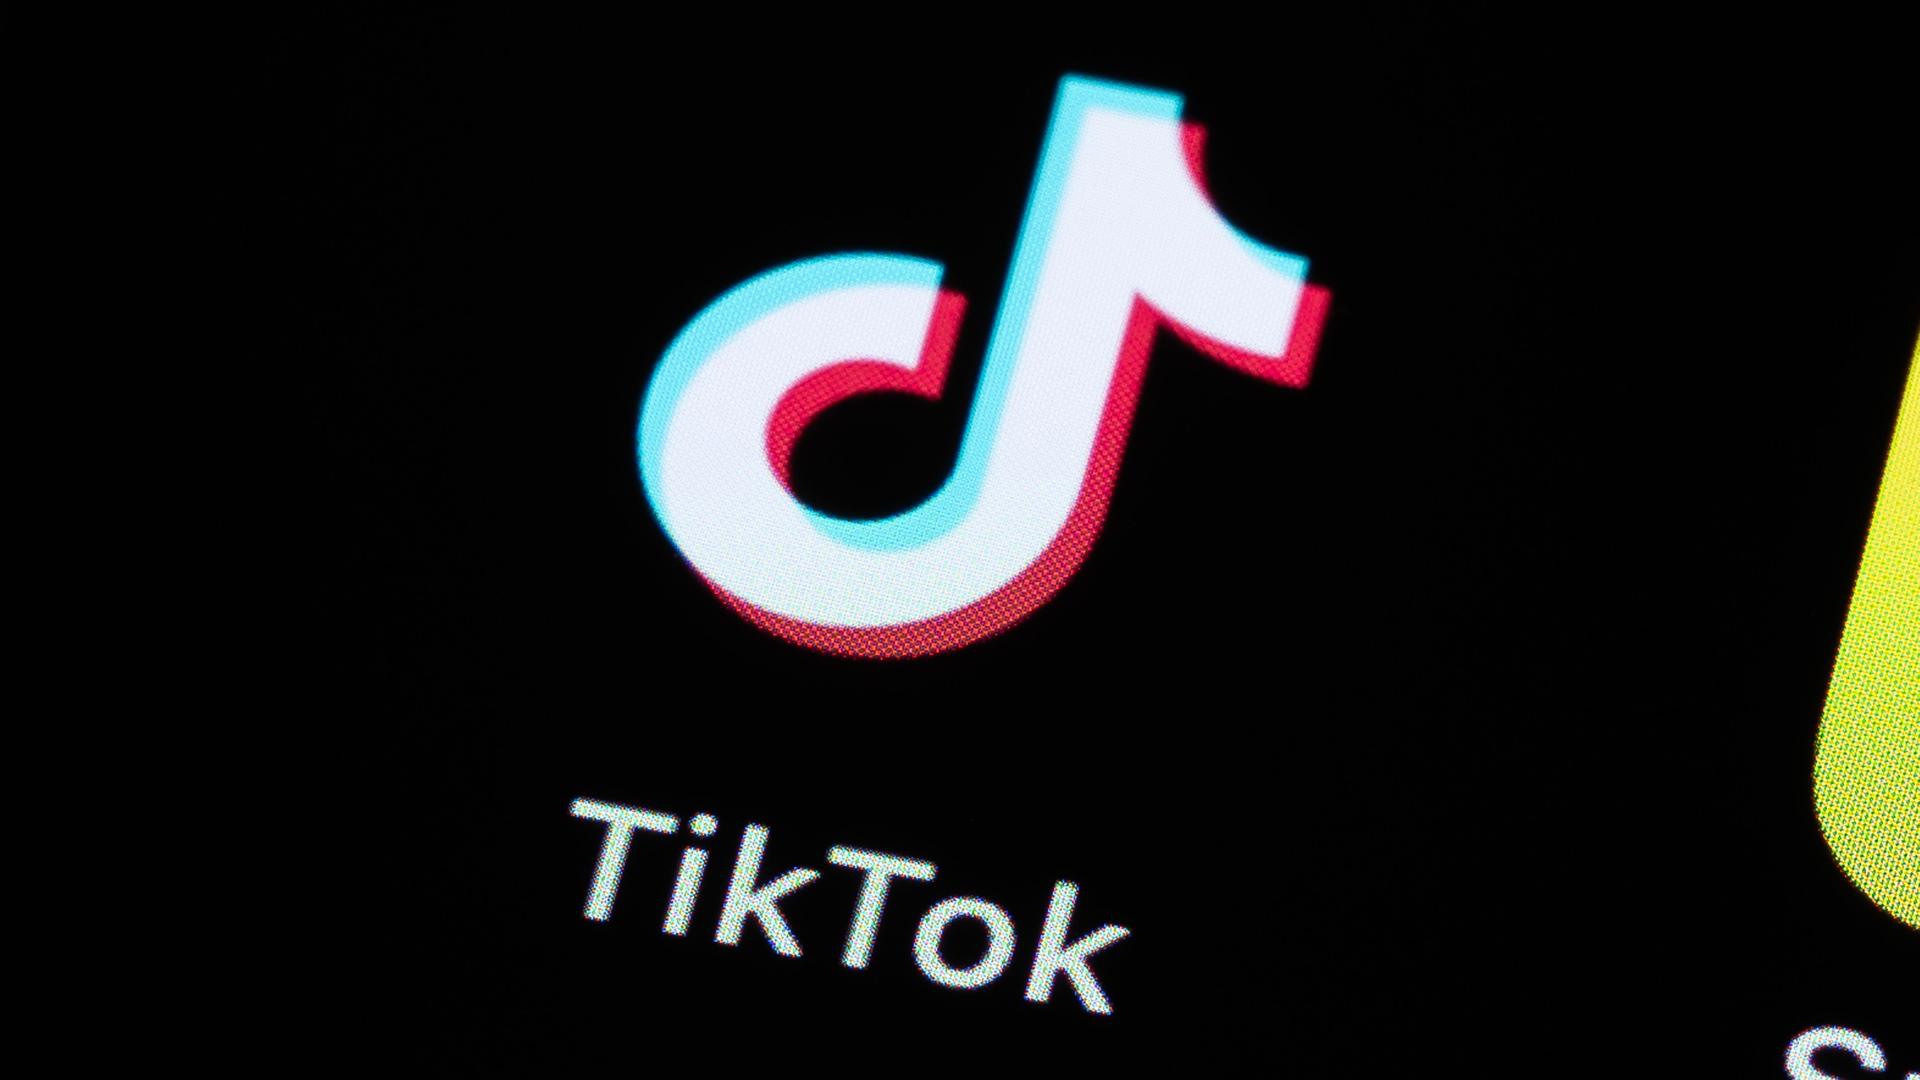 Die App des Videoportals TikTok ist auf dem Display eines Smartphones zu sehen.